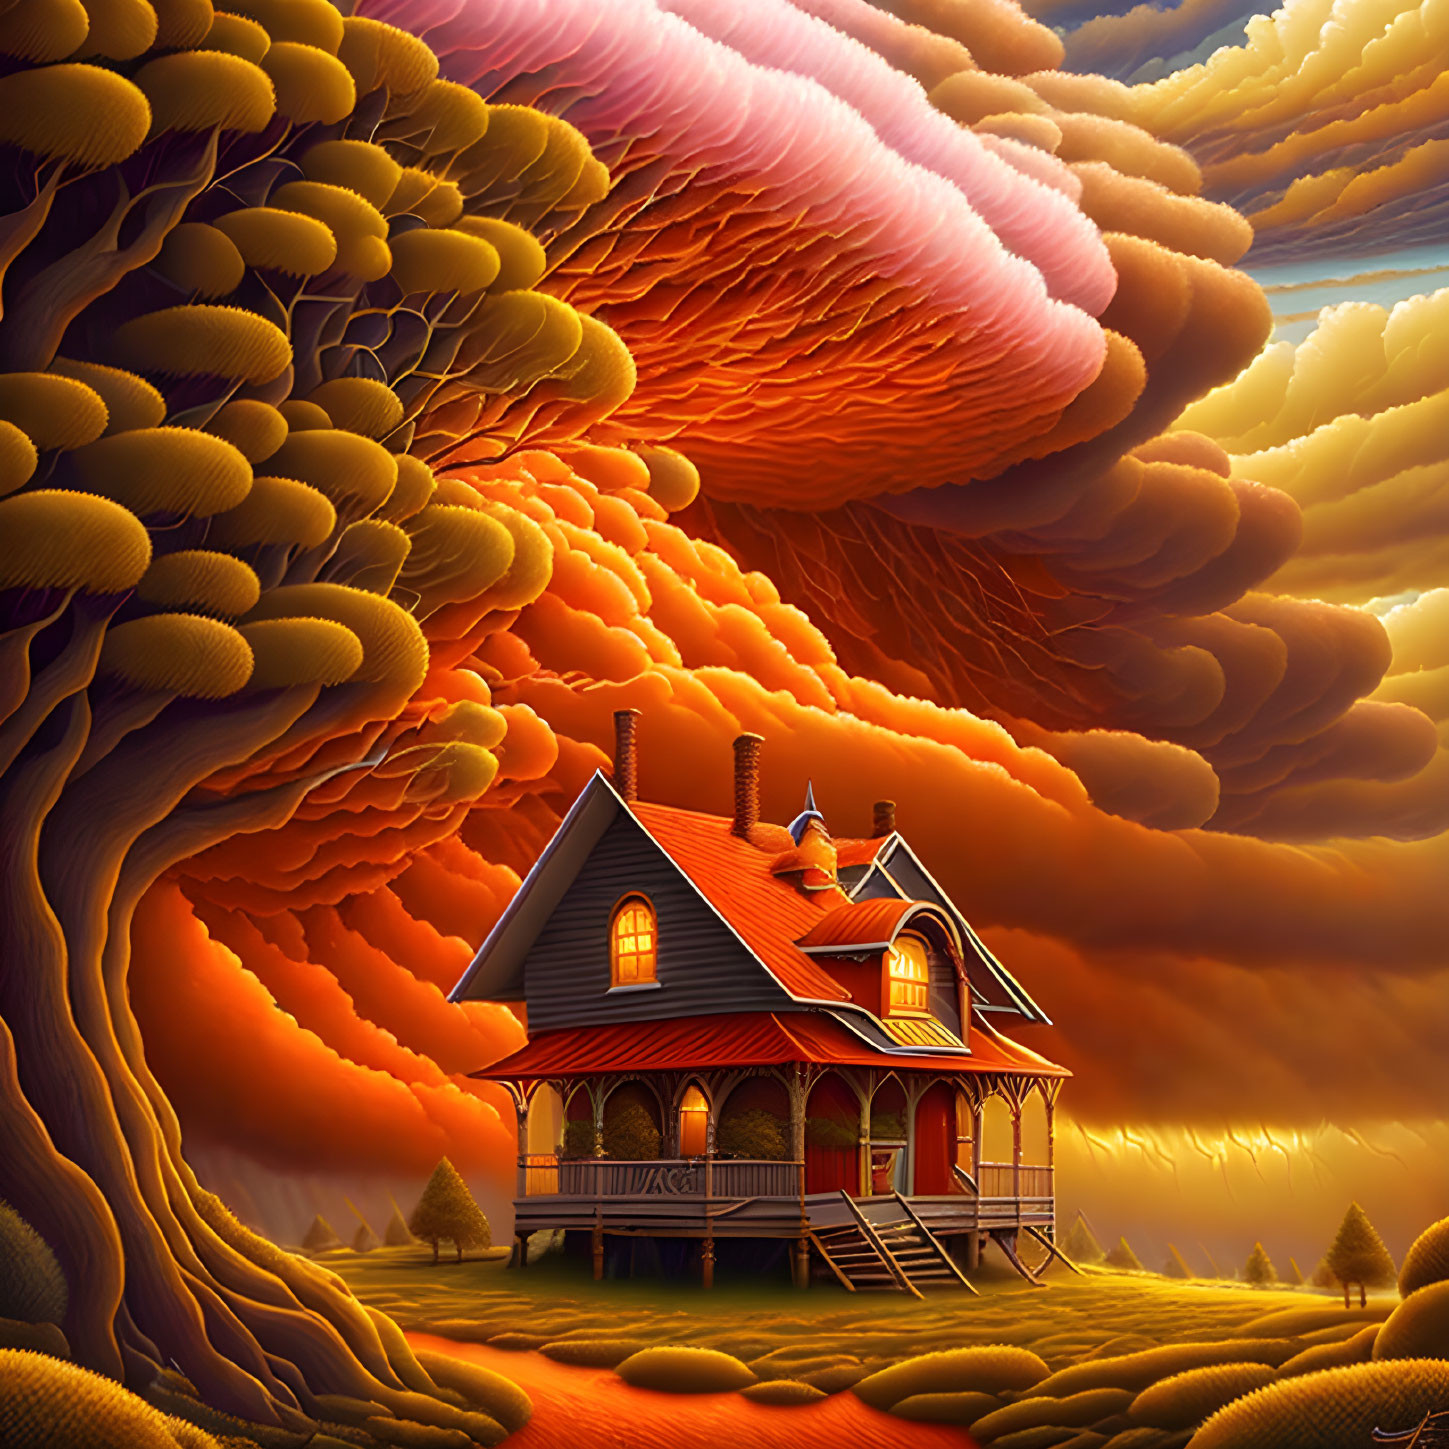 The Orange House